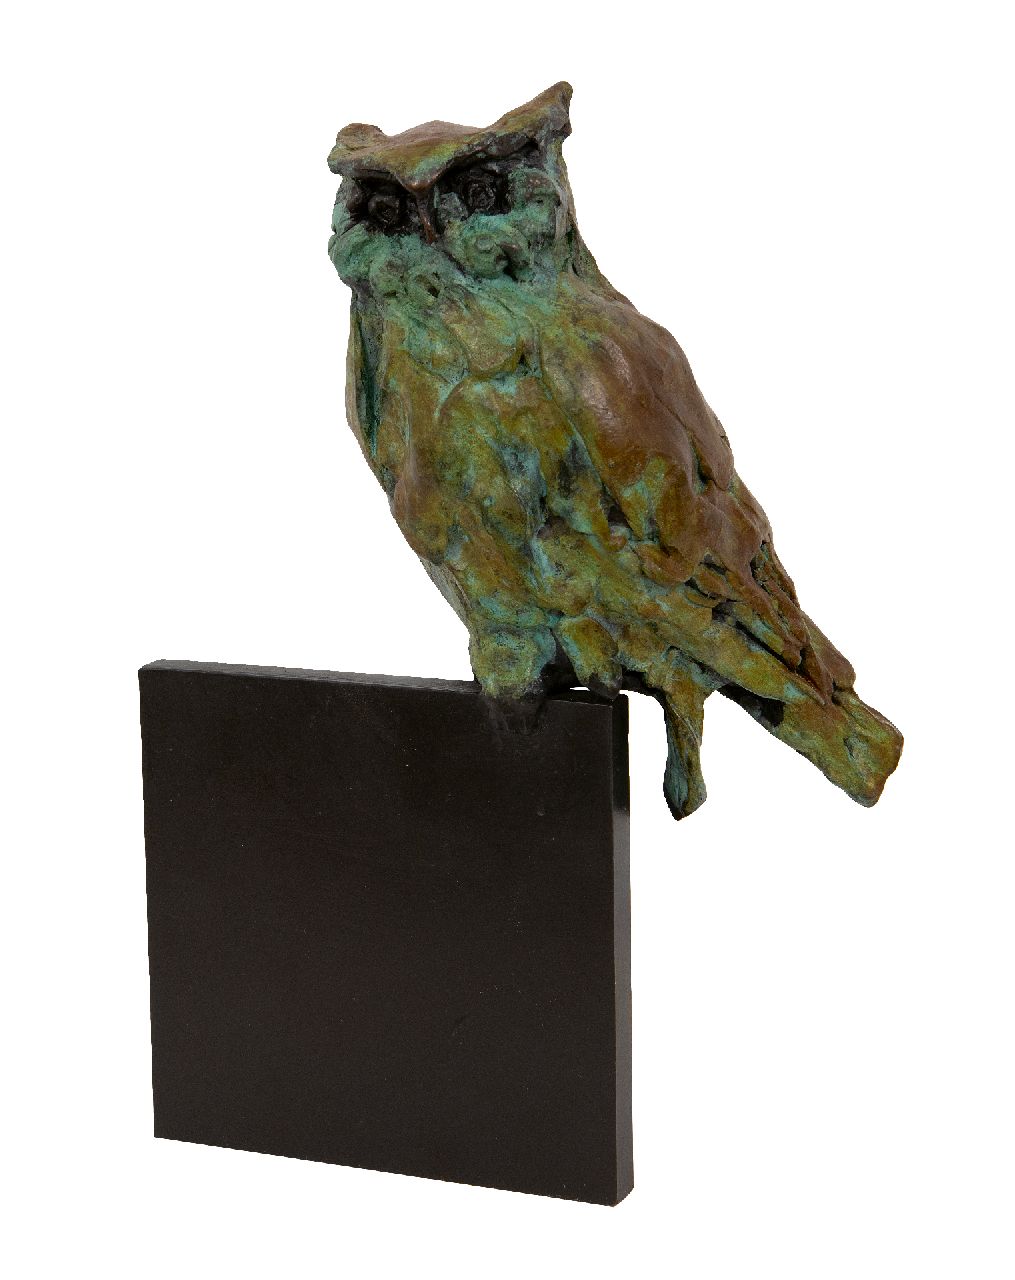 Laan J. van der | Jacqueline van der Laan, Ruhender Uhu, patinated bronze 21.0 x 14.0 cm, gesigneerd gemonogrammeerd achterzijde